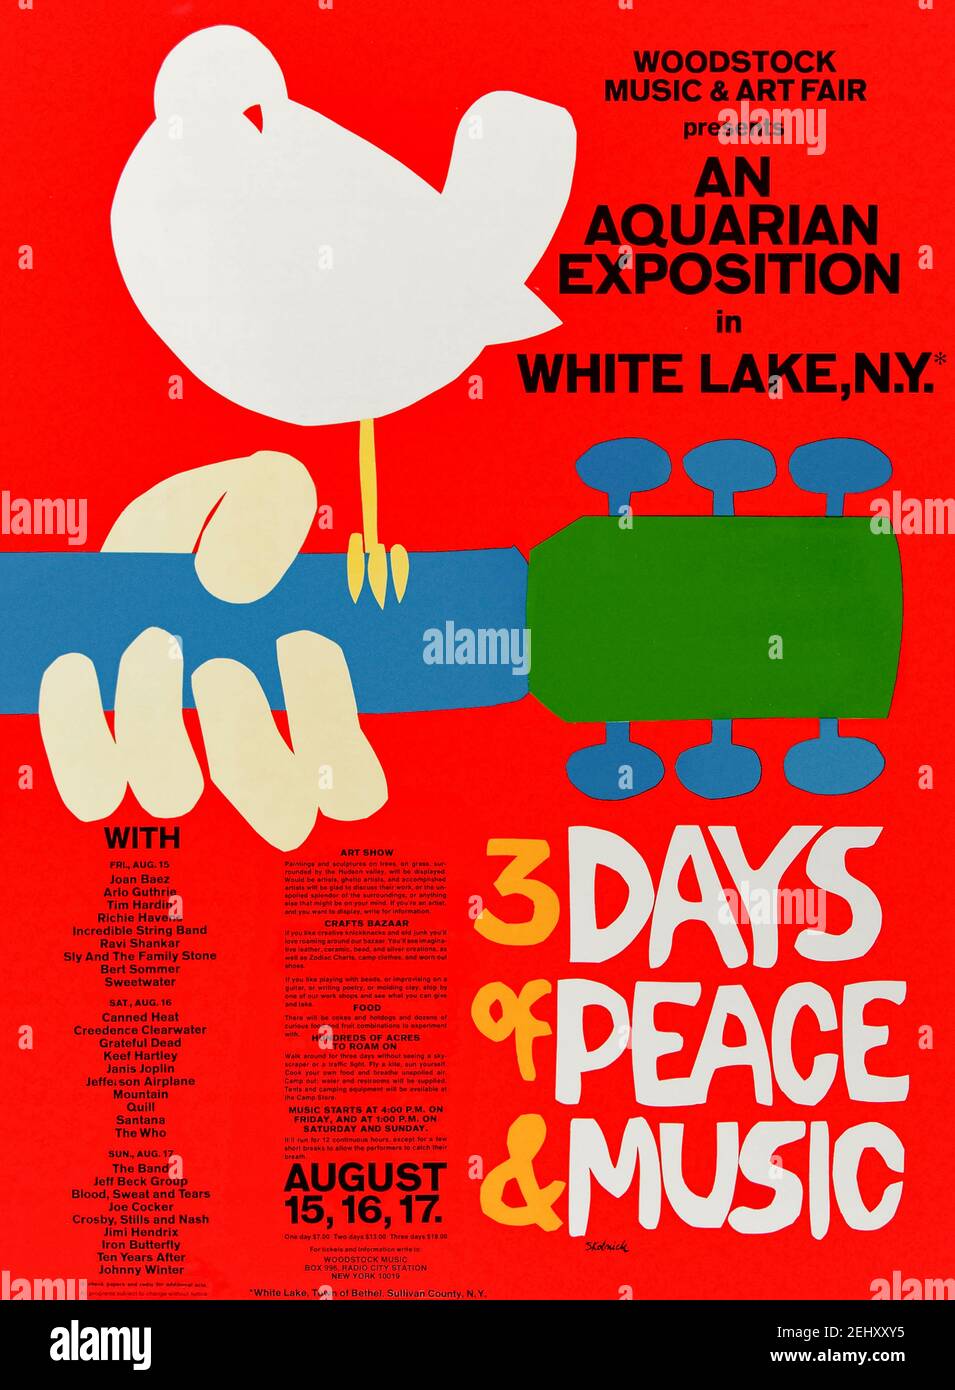 Woodstock Music & Art Fair präsentiert eine Wassermannausstellung in White Lake, N.Y. 3 Days of Peace & Music 15. August 16, 17 1969 Plakat für das legendäre Musikfestival von Arnold Skolnick mit einer weißen Taube auf einem Gitarrenhals ruht entworfen. Das Festival war mit schätzungsweise 400.000 Zuschauern äußerst erfolgreich und gilt seitdem als Schlüsselmoment in der Musikgeschichte und der Anti-Establishment-Gegenkultur der 1960s. Stockfoto